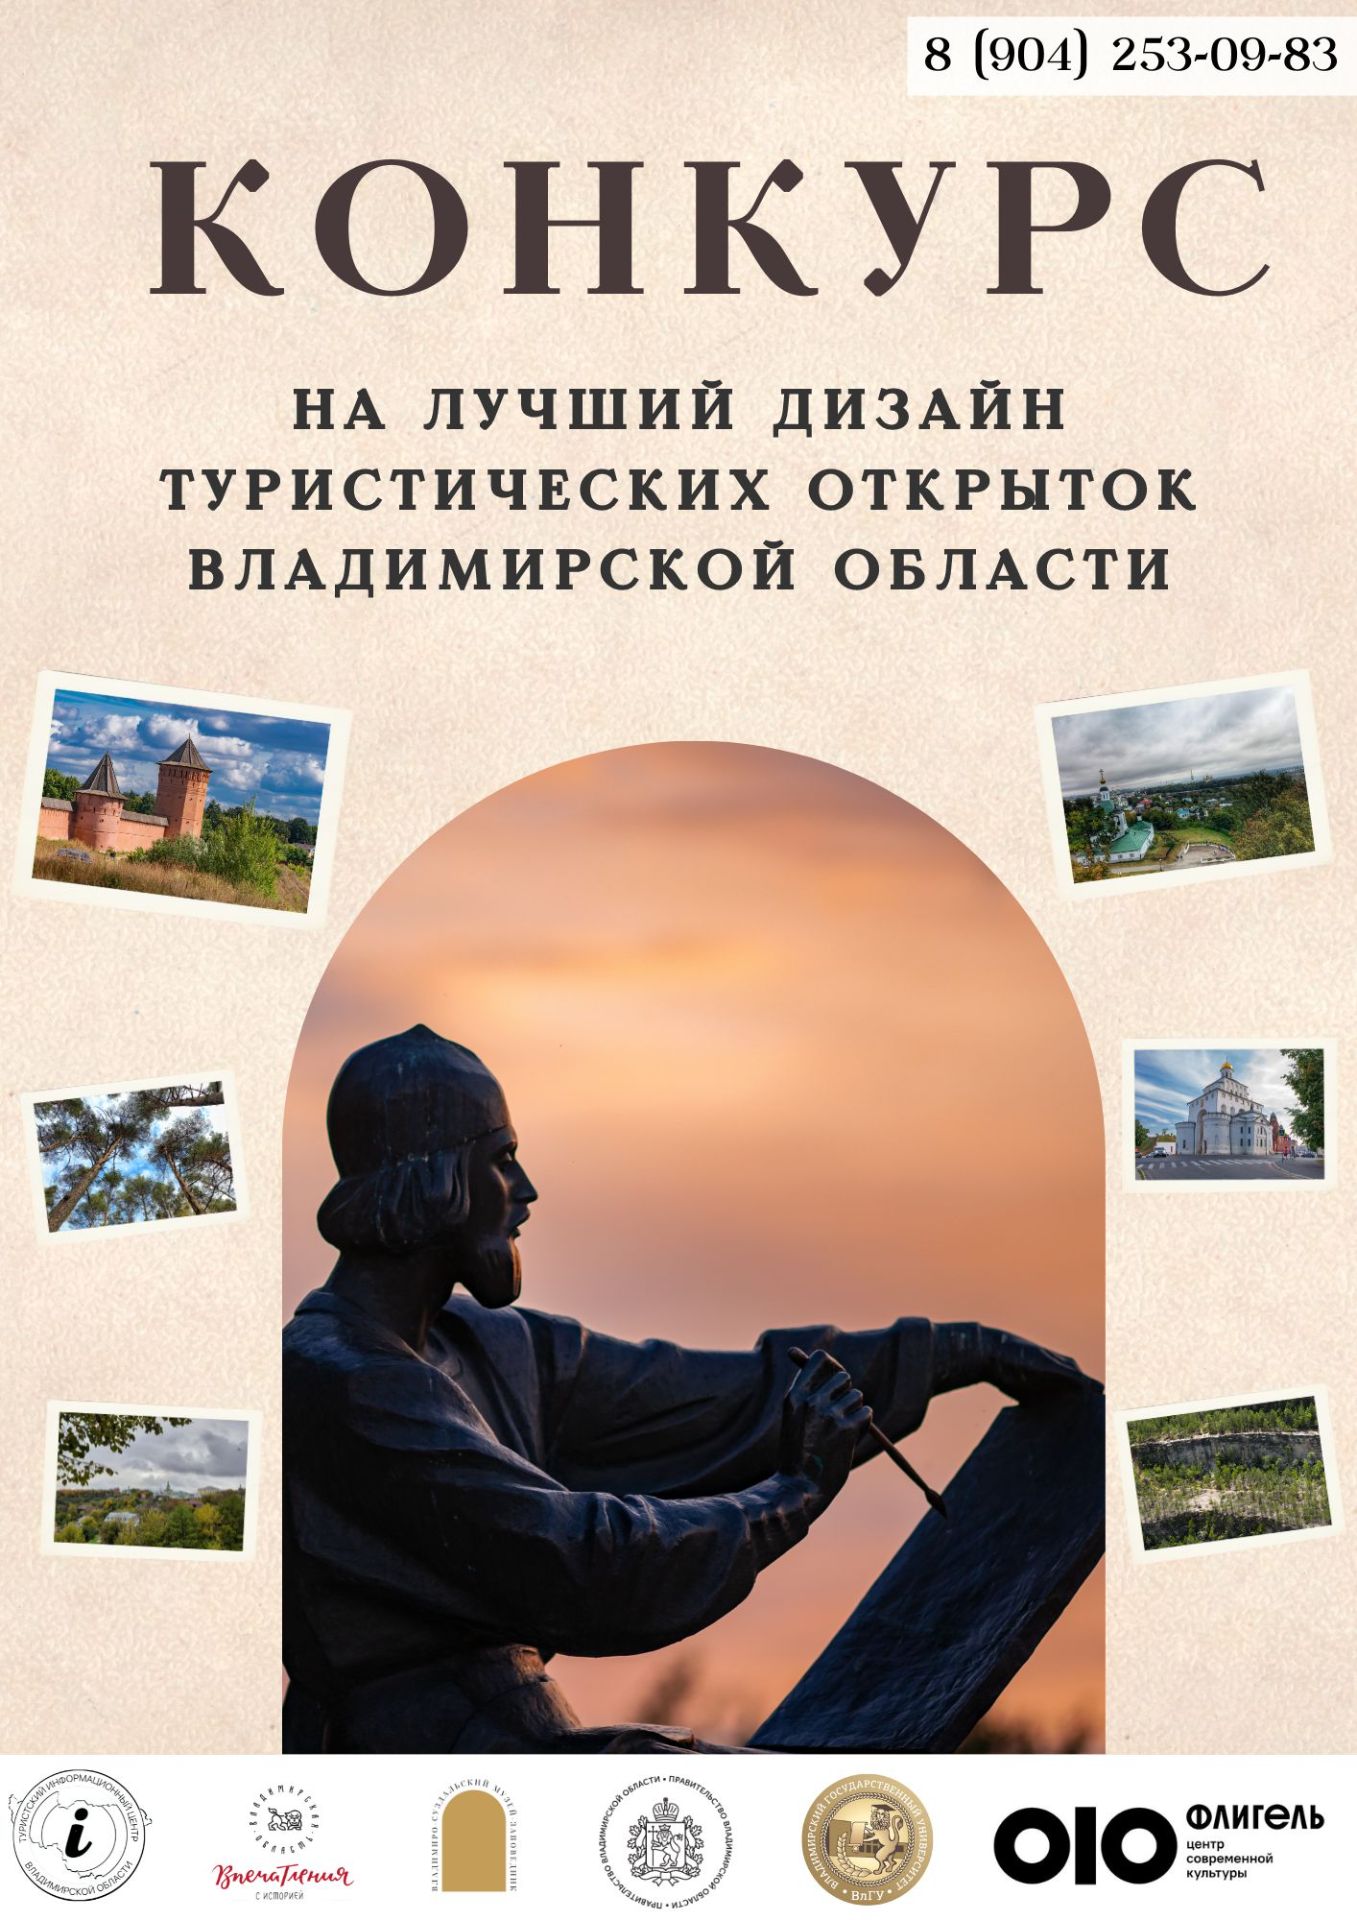 Владимирская область ищет таланты! Принимай участие в уникальном конкурсе дизайна открыток и покажи всем красоту нашего региона!